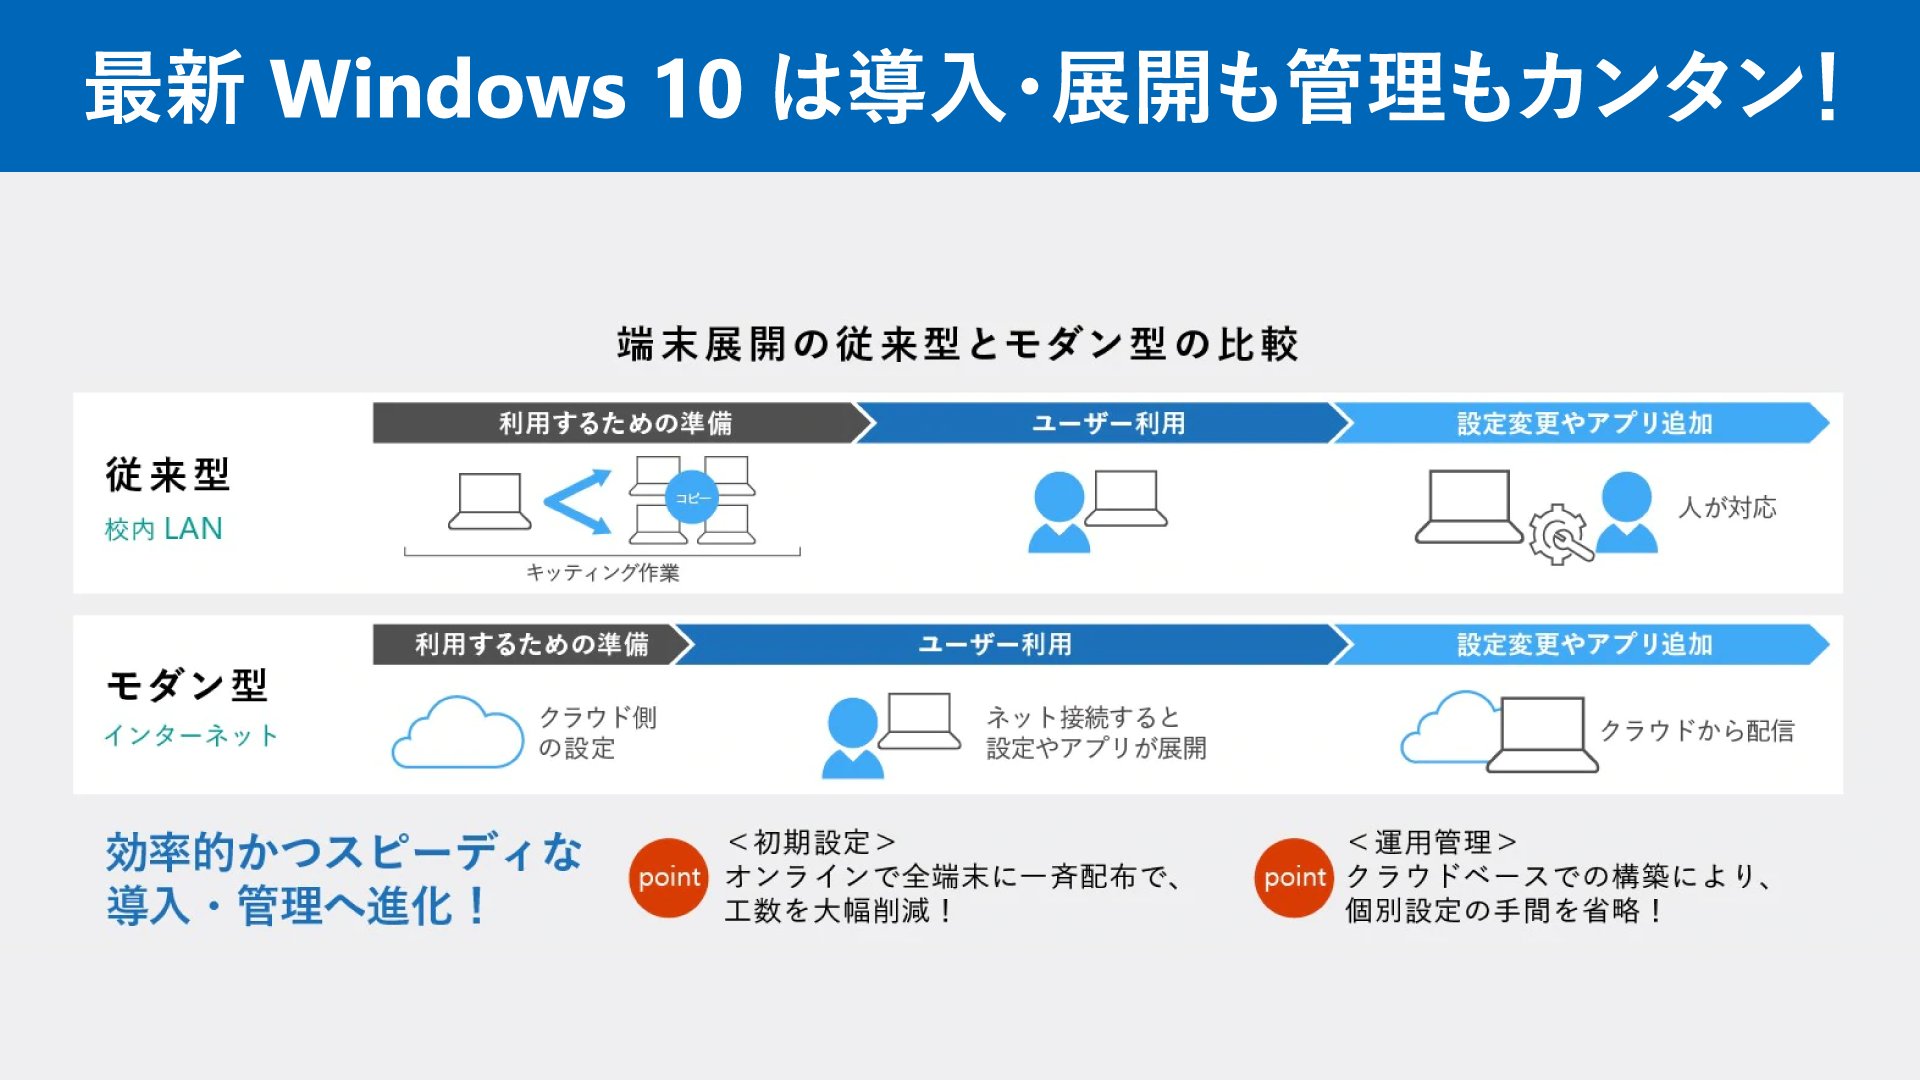 日本マイクロソフト株式会社 On Twitter 最新 Windows 10 は導入 展開も管理もカンタン 最新の Windows10 は大きく利便性 操作性が向上しており 教務にも校務にも子どもたちの利用にも最適な Os として進歩を遂げています 以下のページで 導入 展開 管理